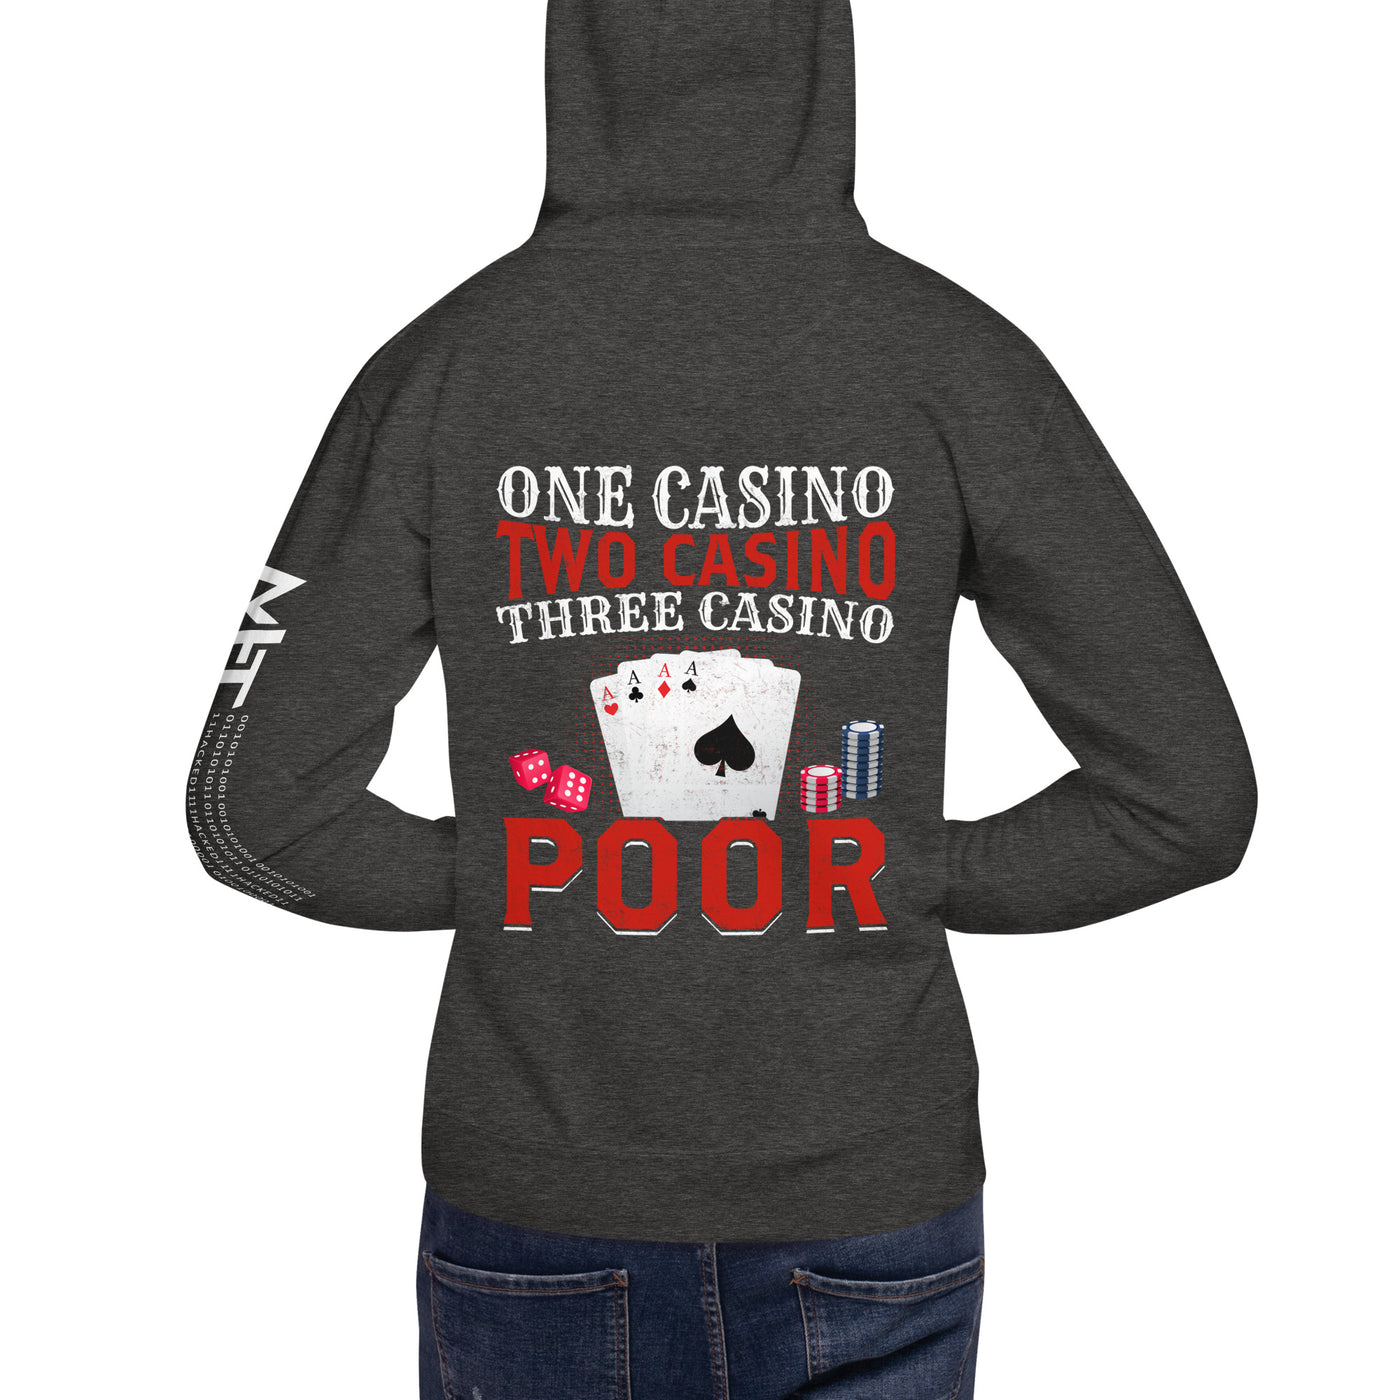 One Casino, Two Casino, Three Casino = Poor - Unisex Hoodie ( Back Print )